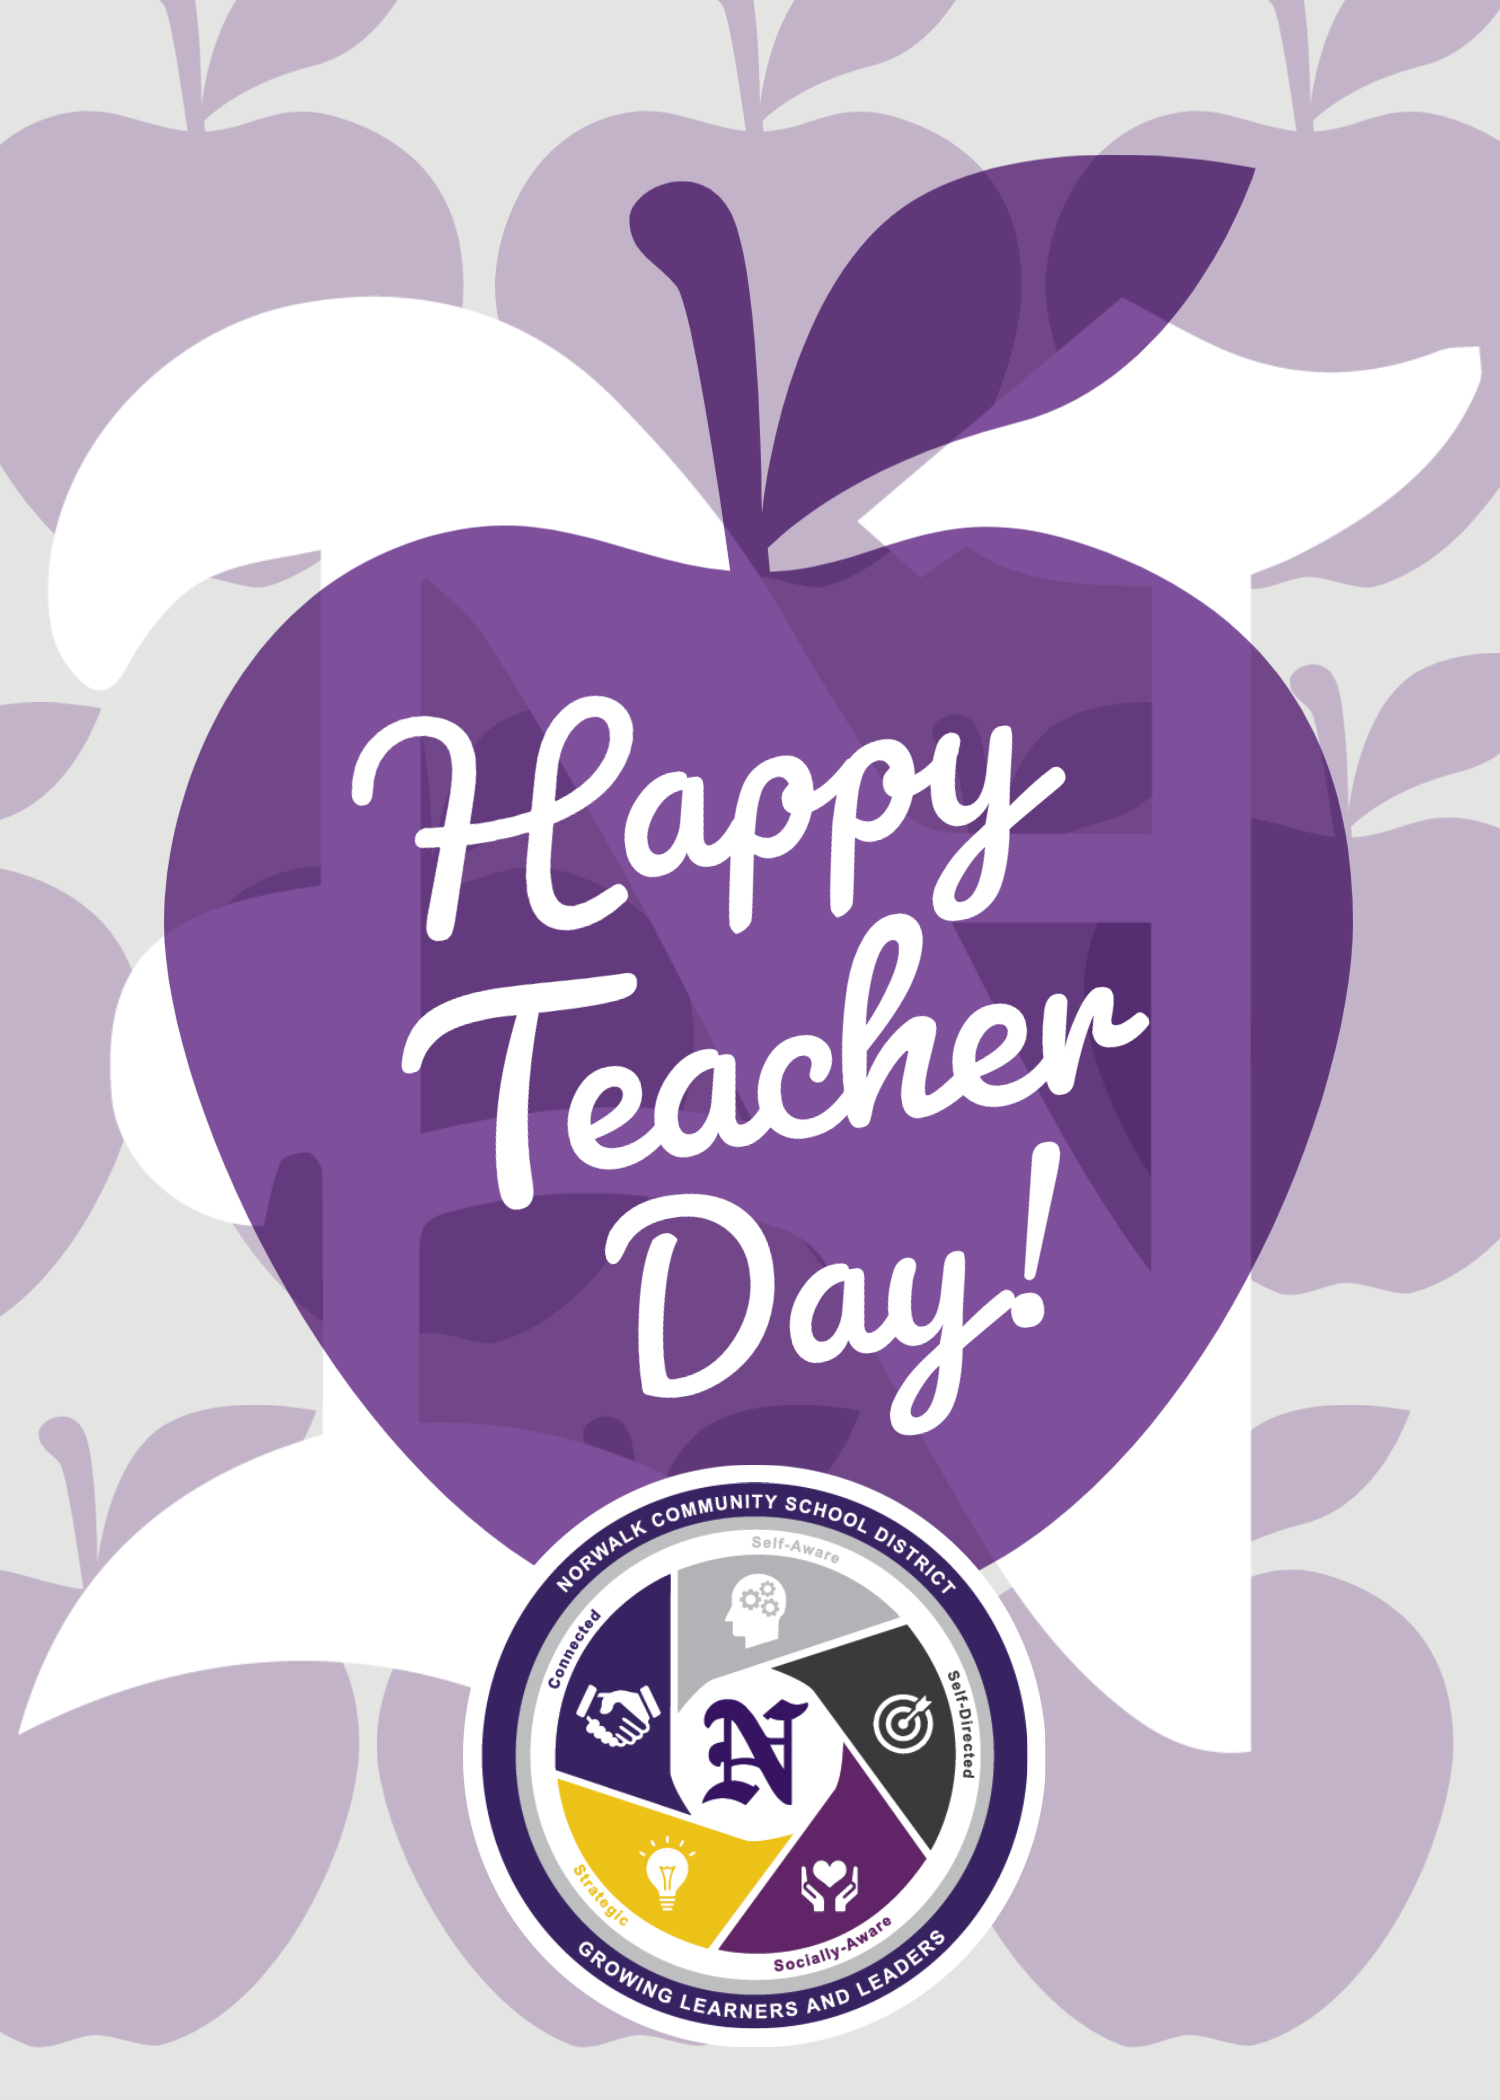 let-s-recognize-the-world-s-teachers-national-teacher-appreciation